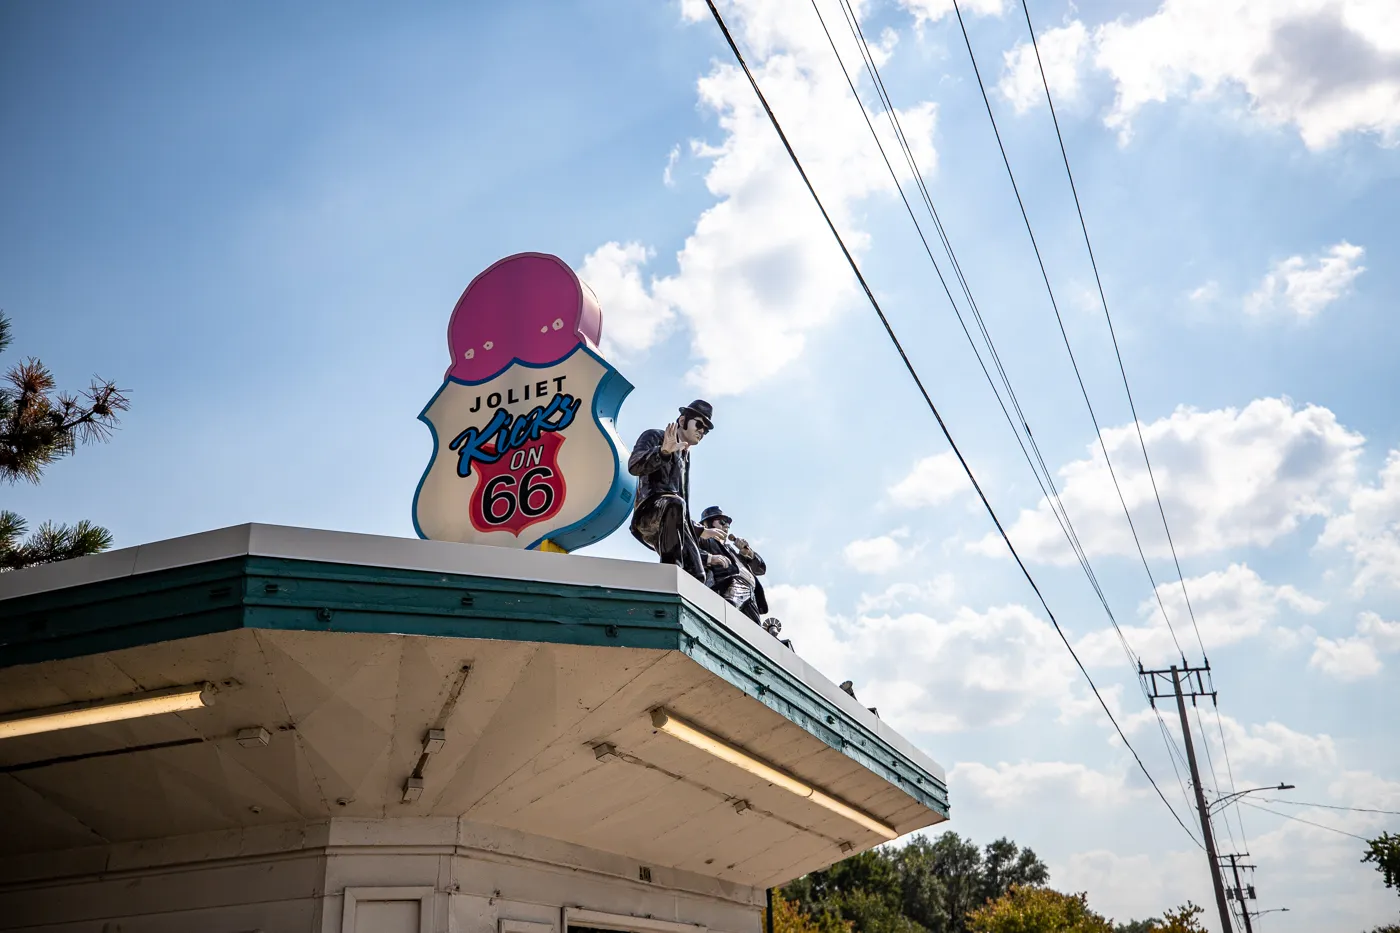 Rich & Creamy in Joliet, Illinois - Route 66 Ice Cream Shop